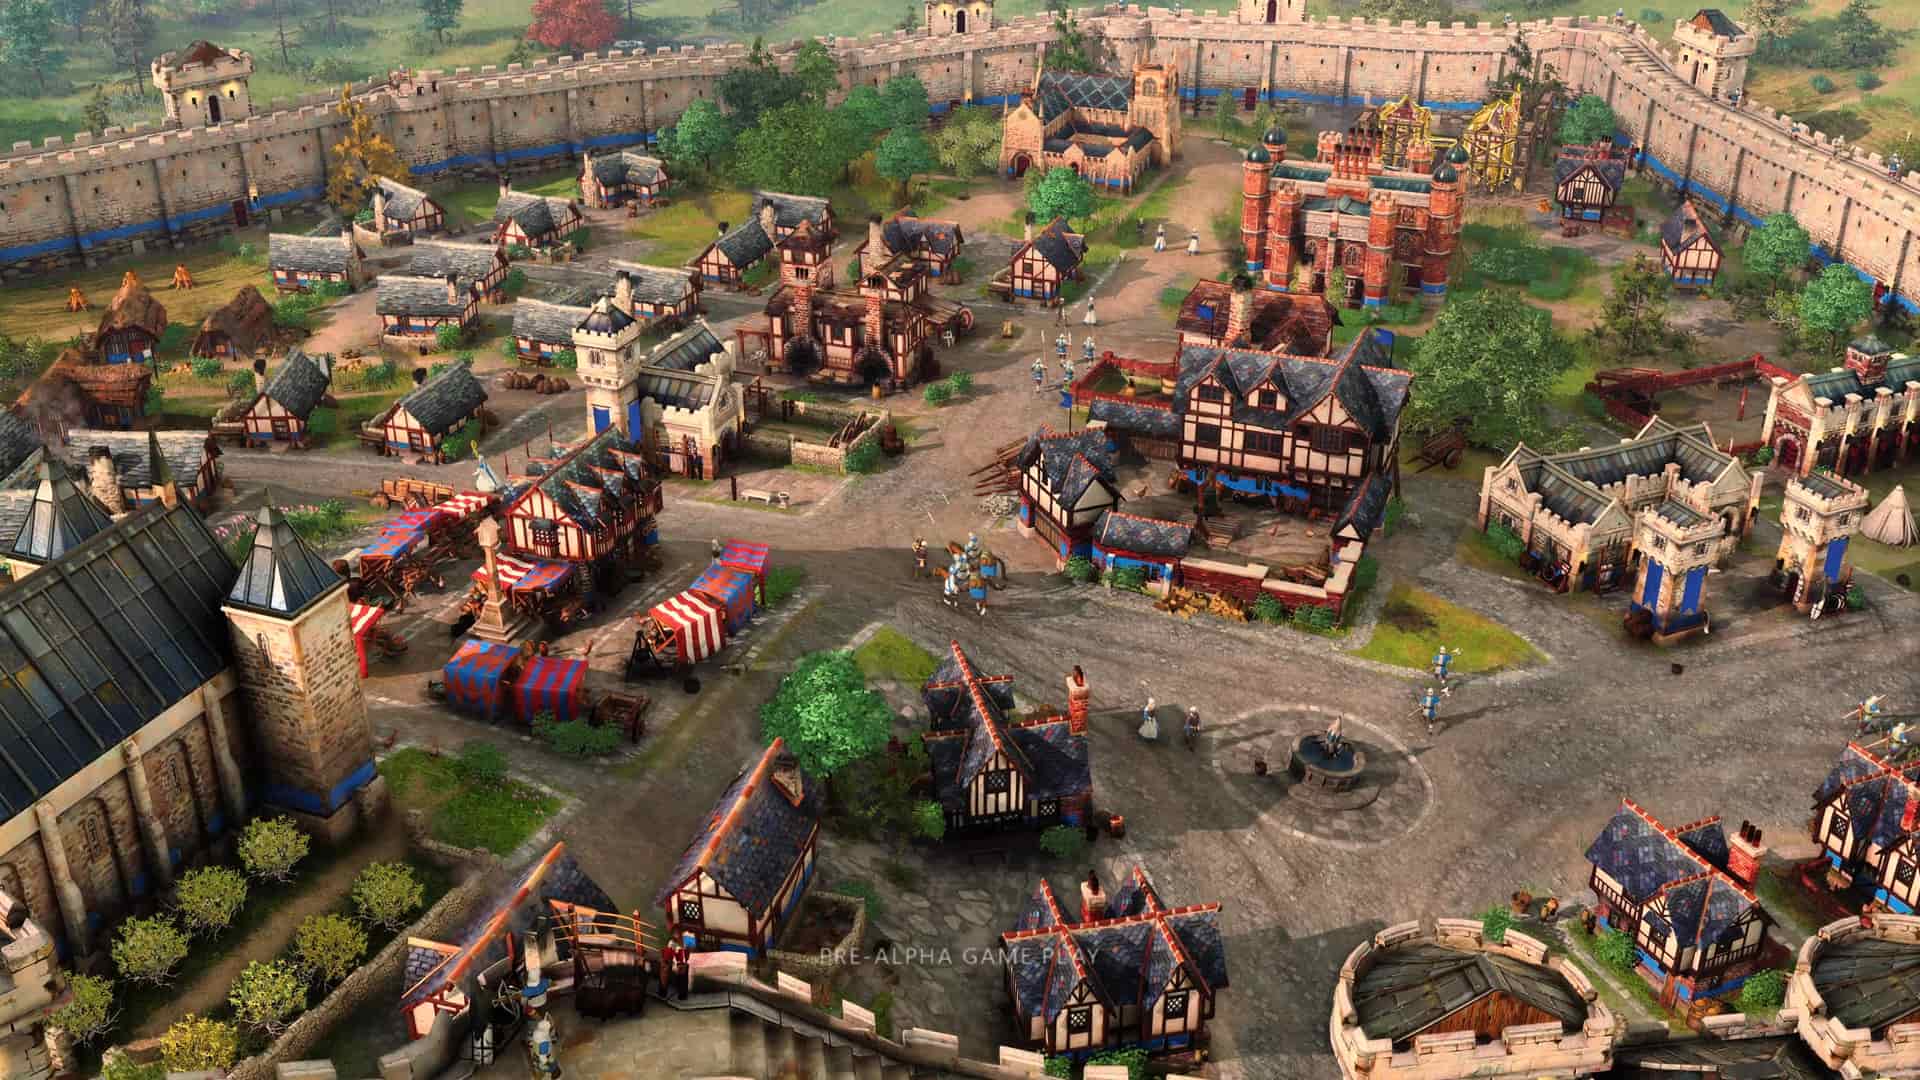 captura del juego age of empires 4 donde se ve una aldea desde arriba